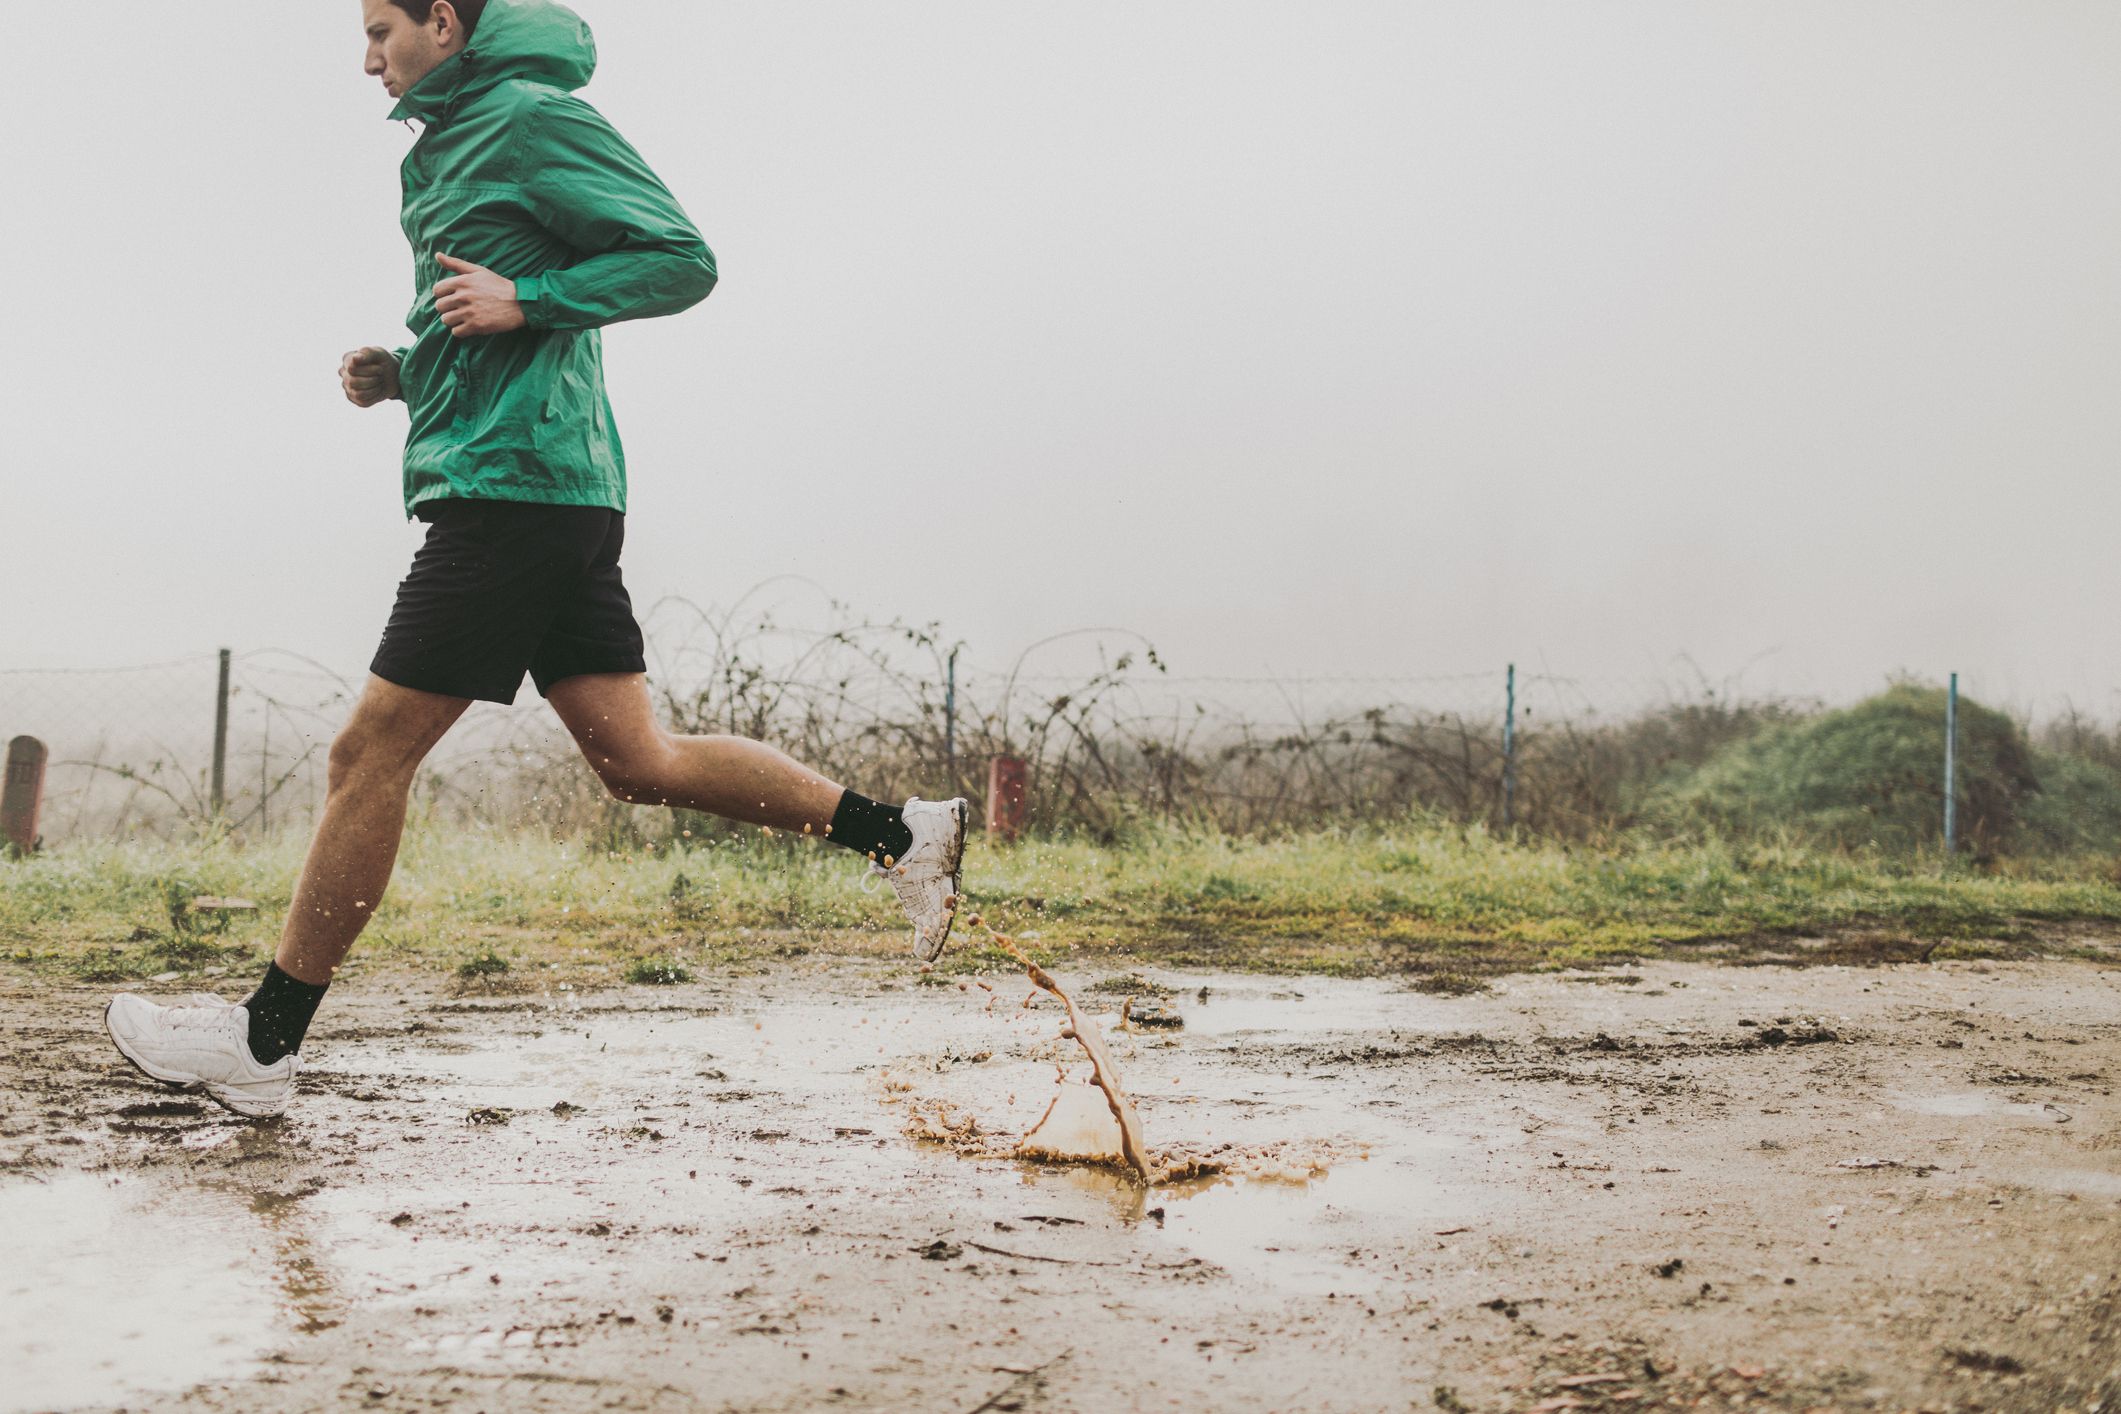 Men - Running pants - Running & trailrunning - Activities